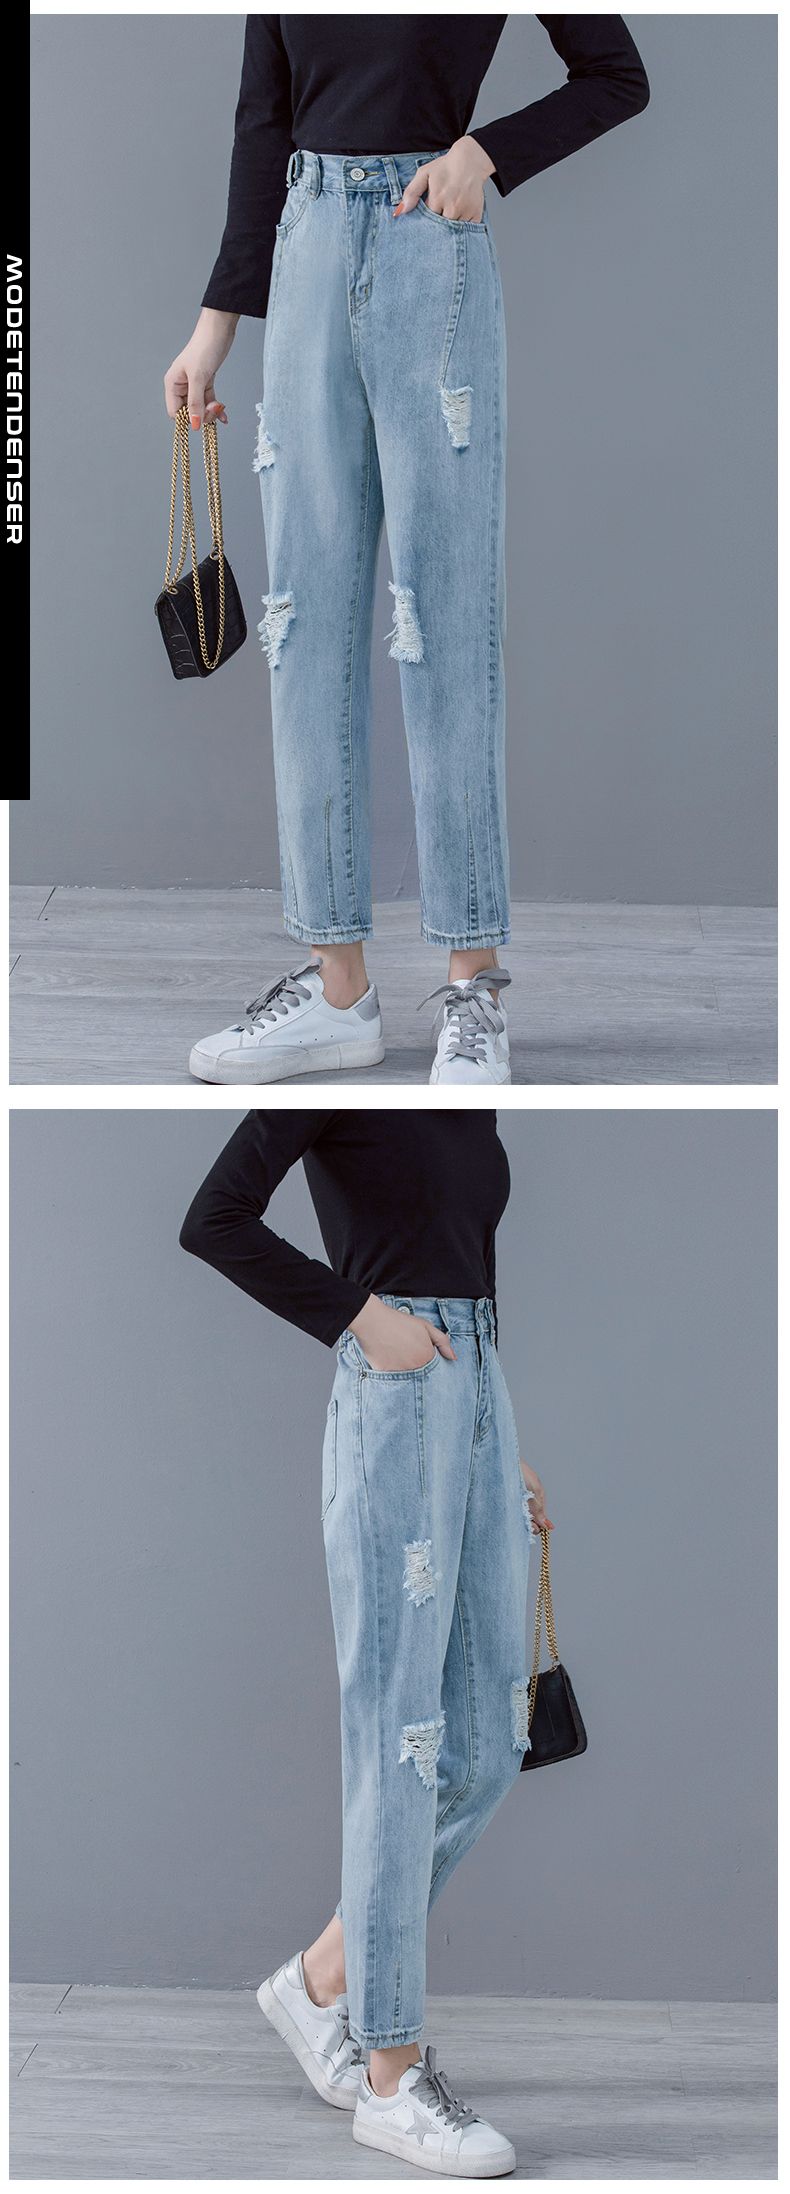 kvinders jeans slidte 1